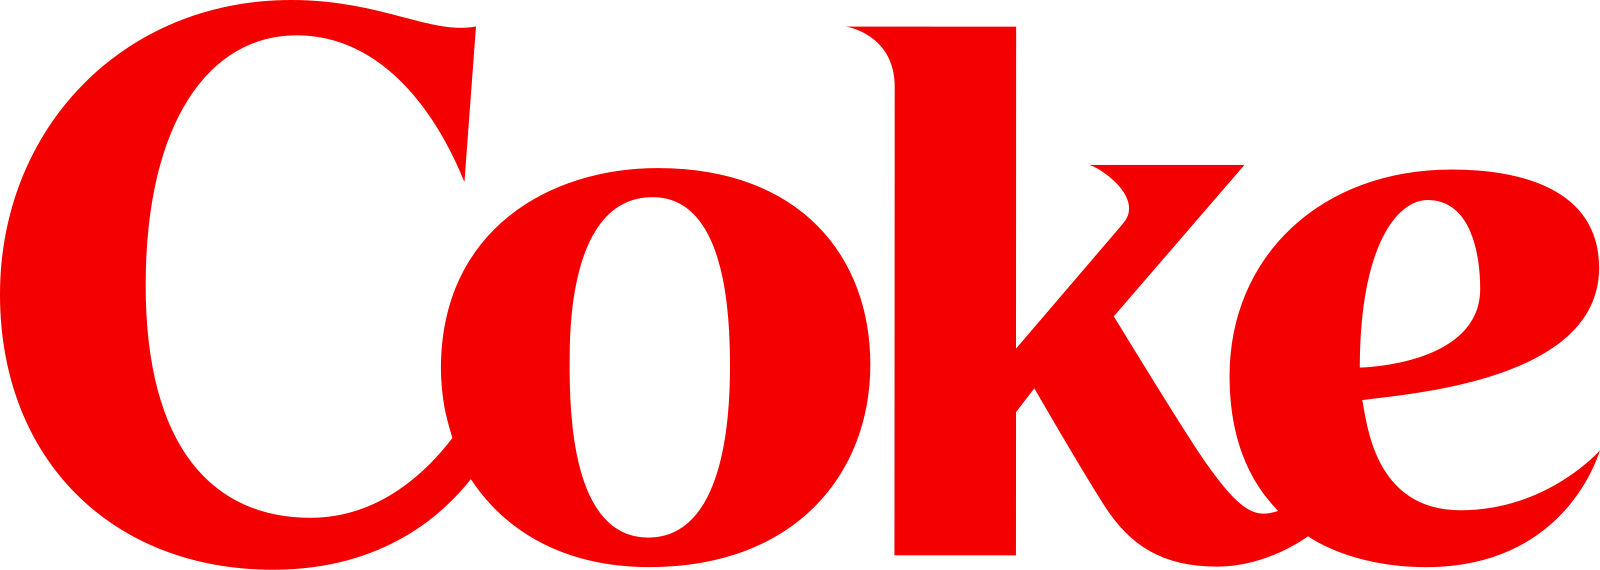 Coke logo svg